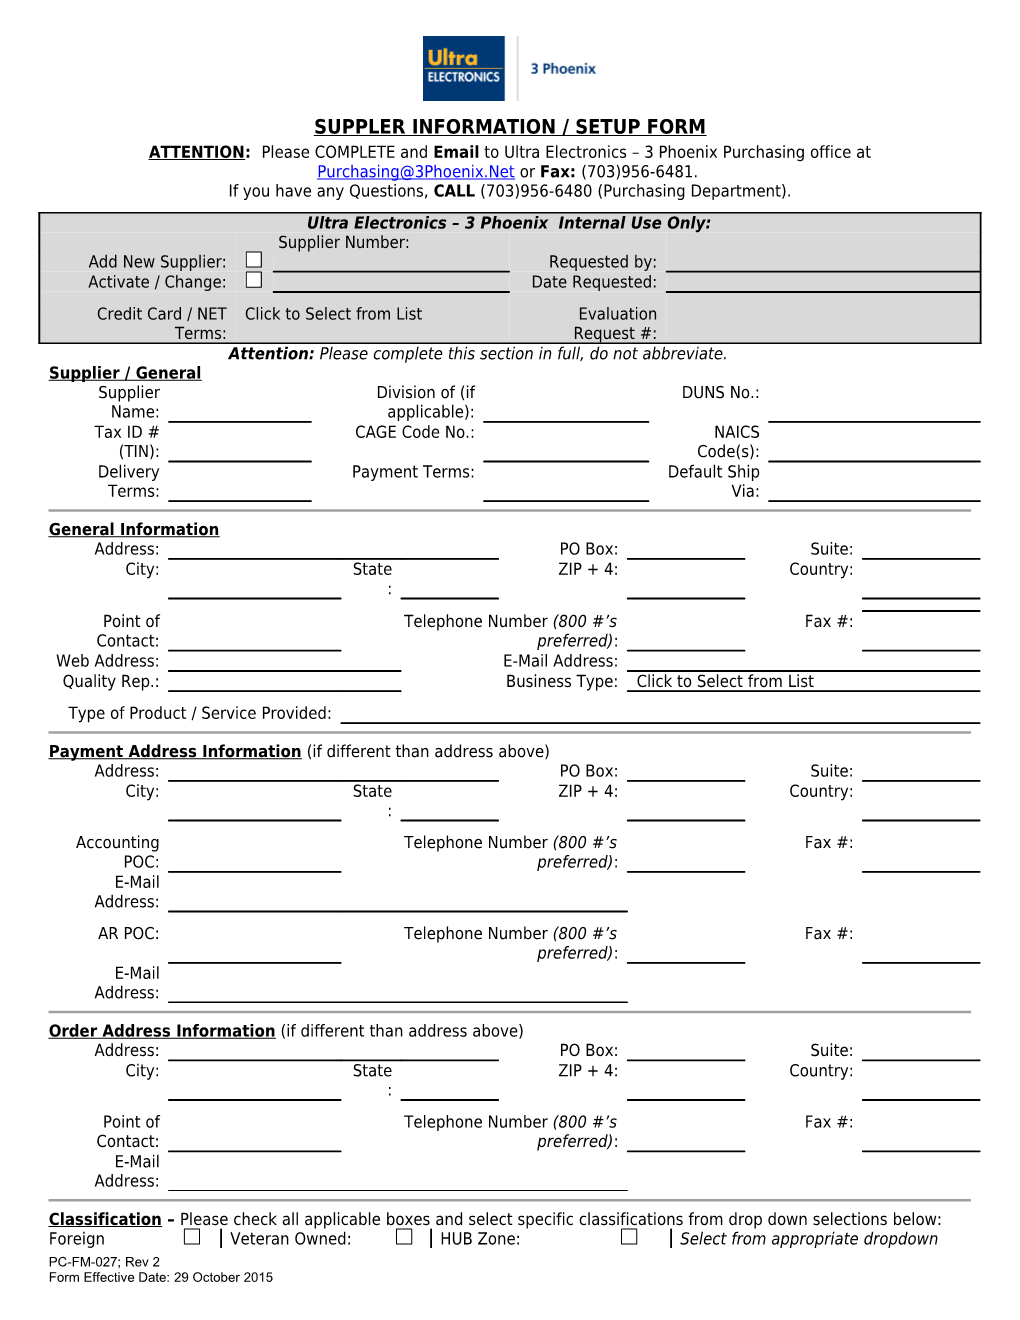 PC-FM-027 Supplier Information-Setup Form